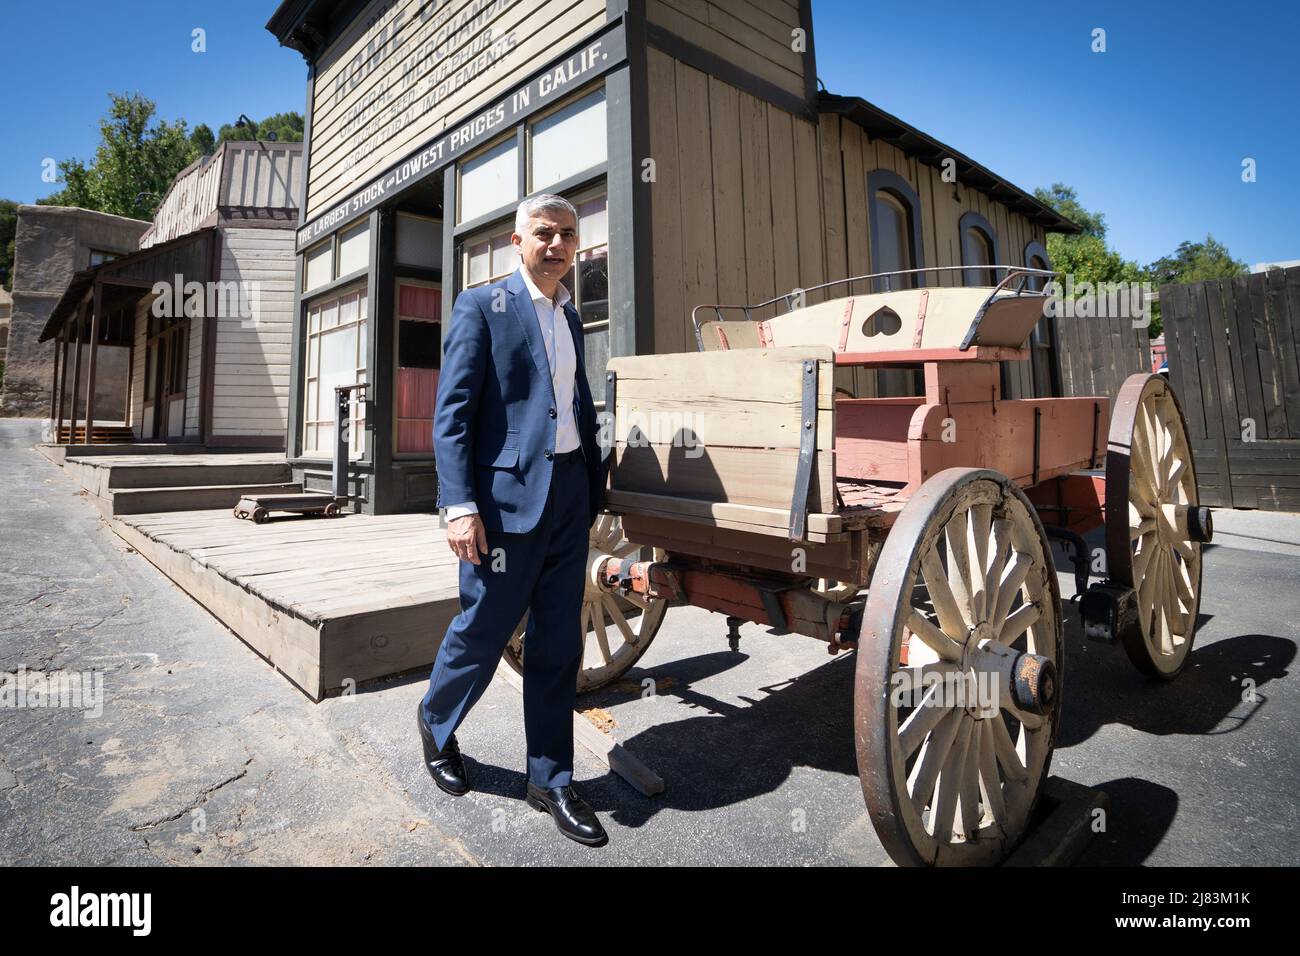 Der Bürgermeister von London Sadiq Khan über einen westlichen Film, der während eines Besuchs in den Universal Studios in Los Angeles gedreht wurde, während er in den USA war, um Londons Tourismusindustrie zu fördern. Bilddatum: Donnerstag, 12. Mai 2022. Stockfoto